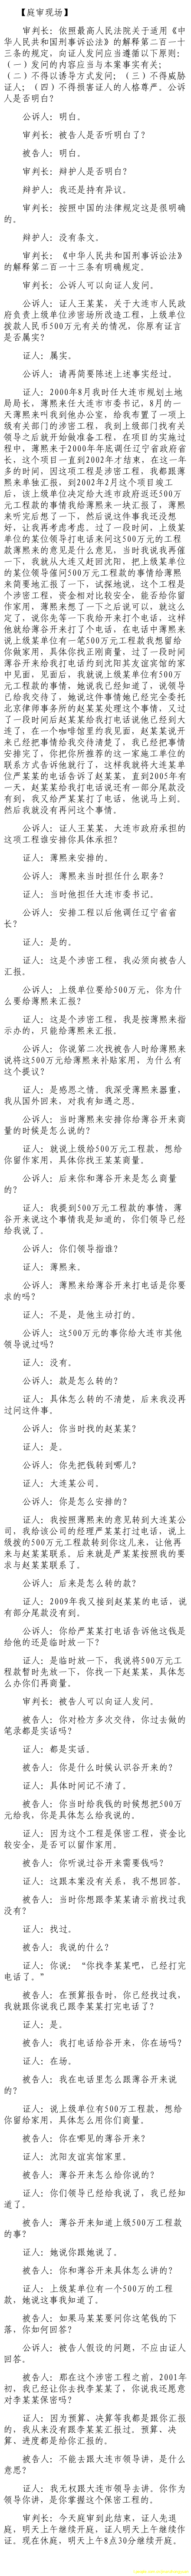 济南市中级法院官方微博公布的8月23日庭审现场记录（9）